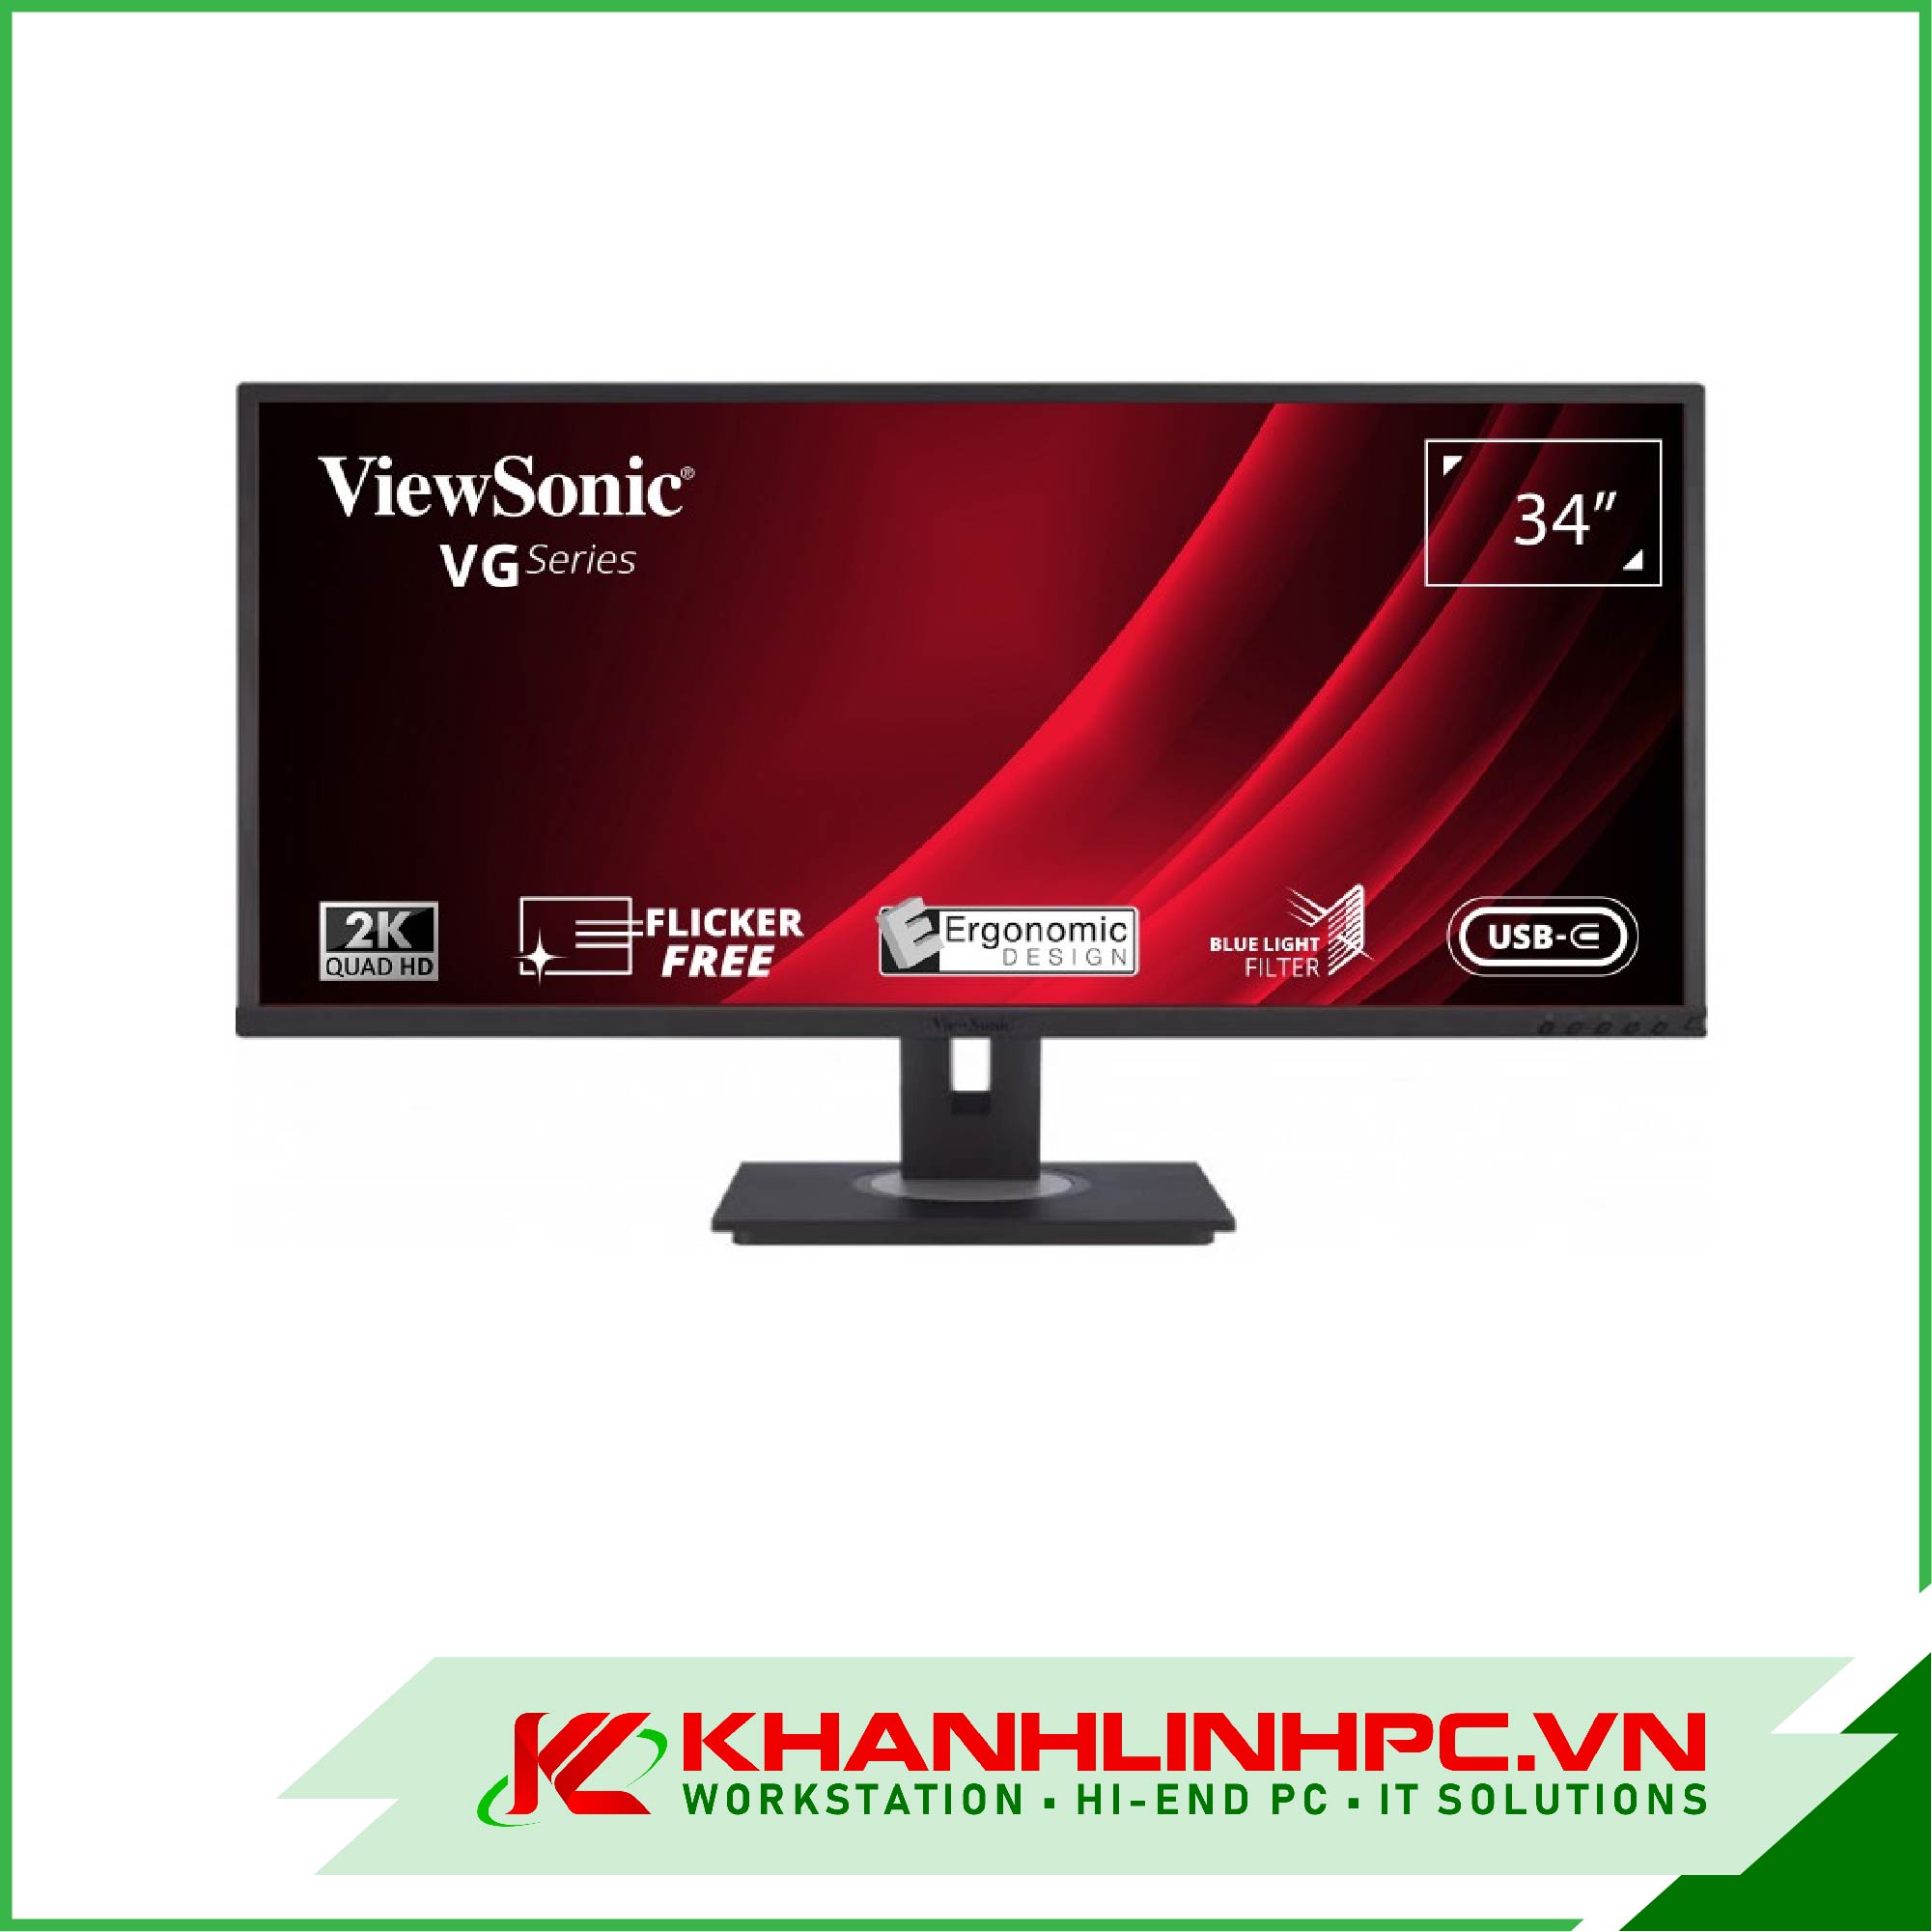 Màn Hình ViewSonic VG3456 ( 2K / VA / 60 Hz / 34